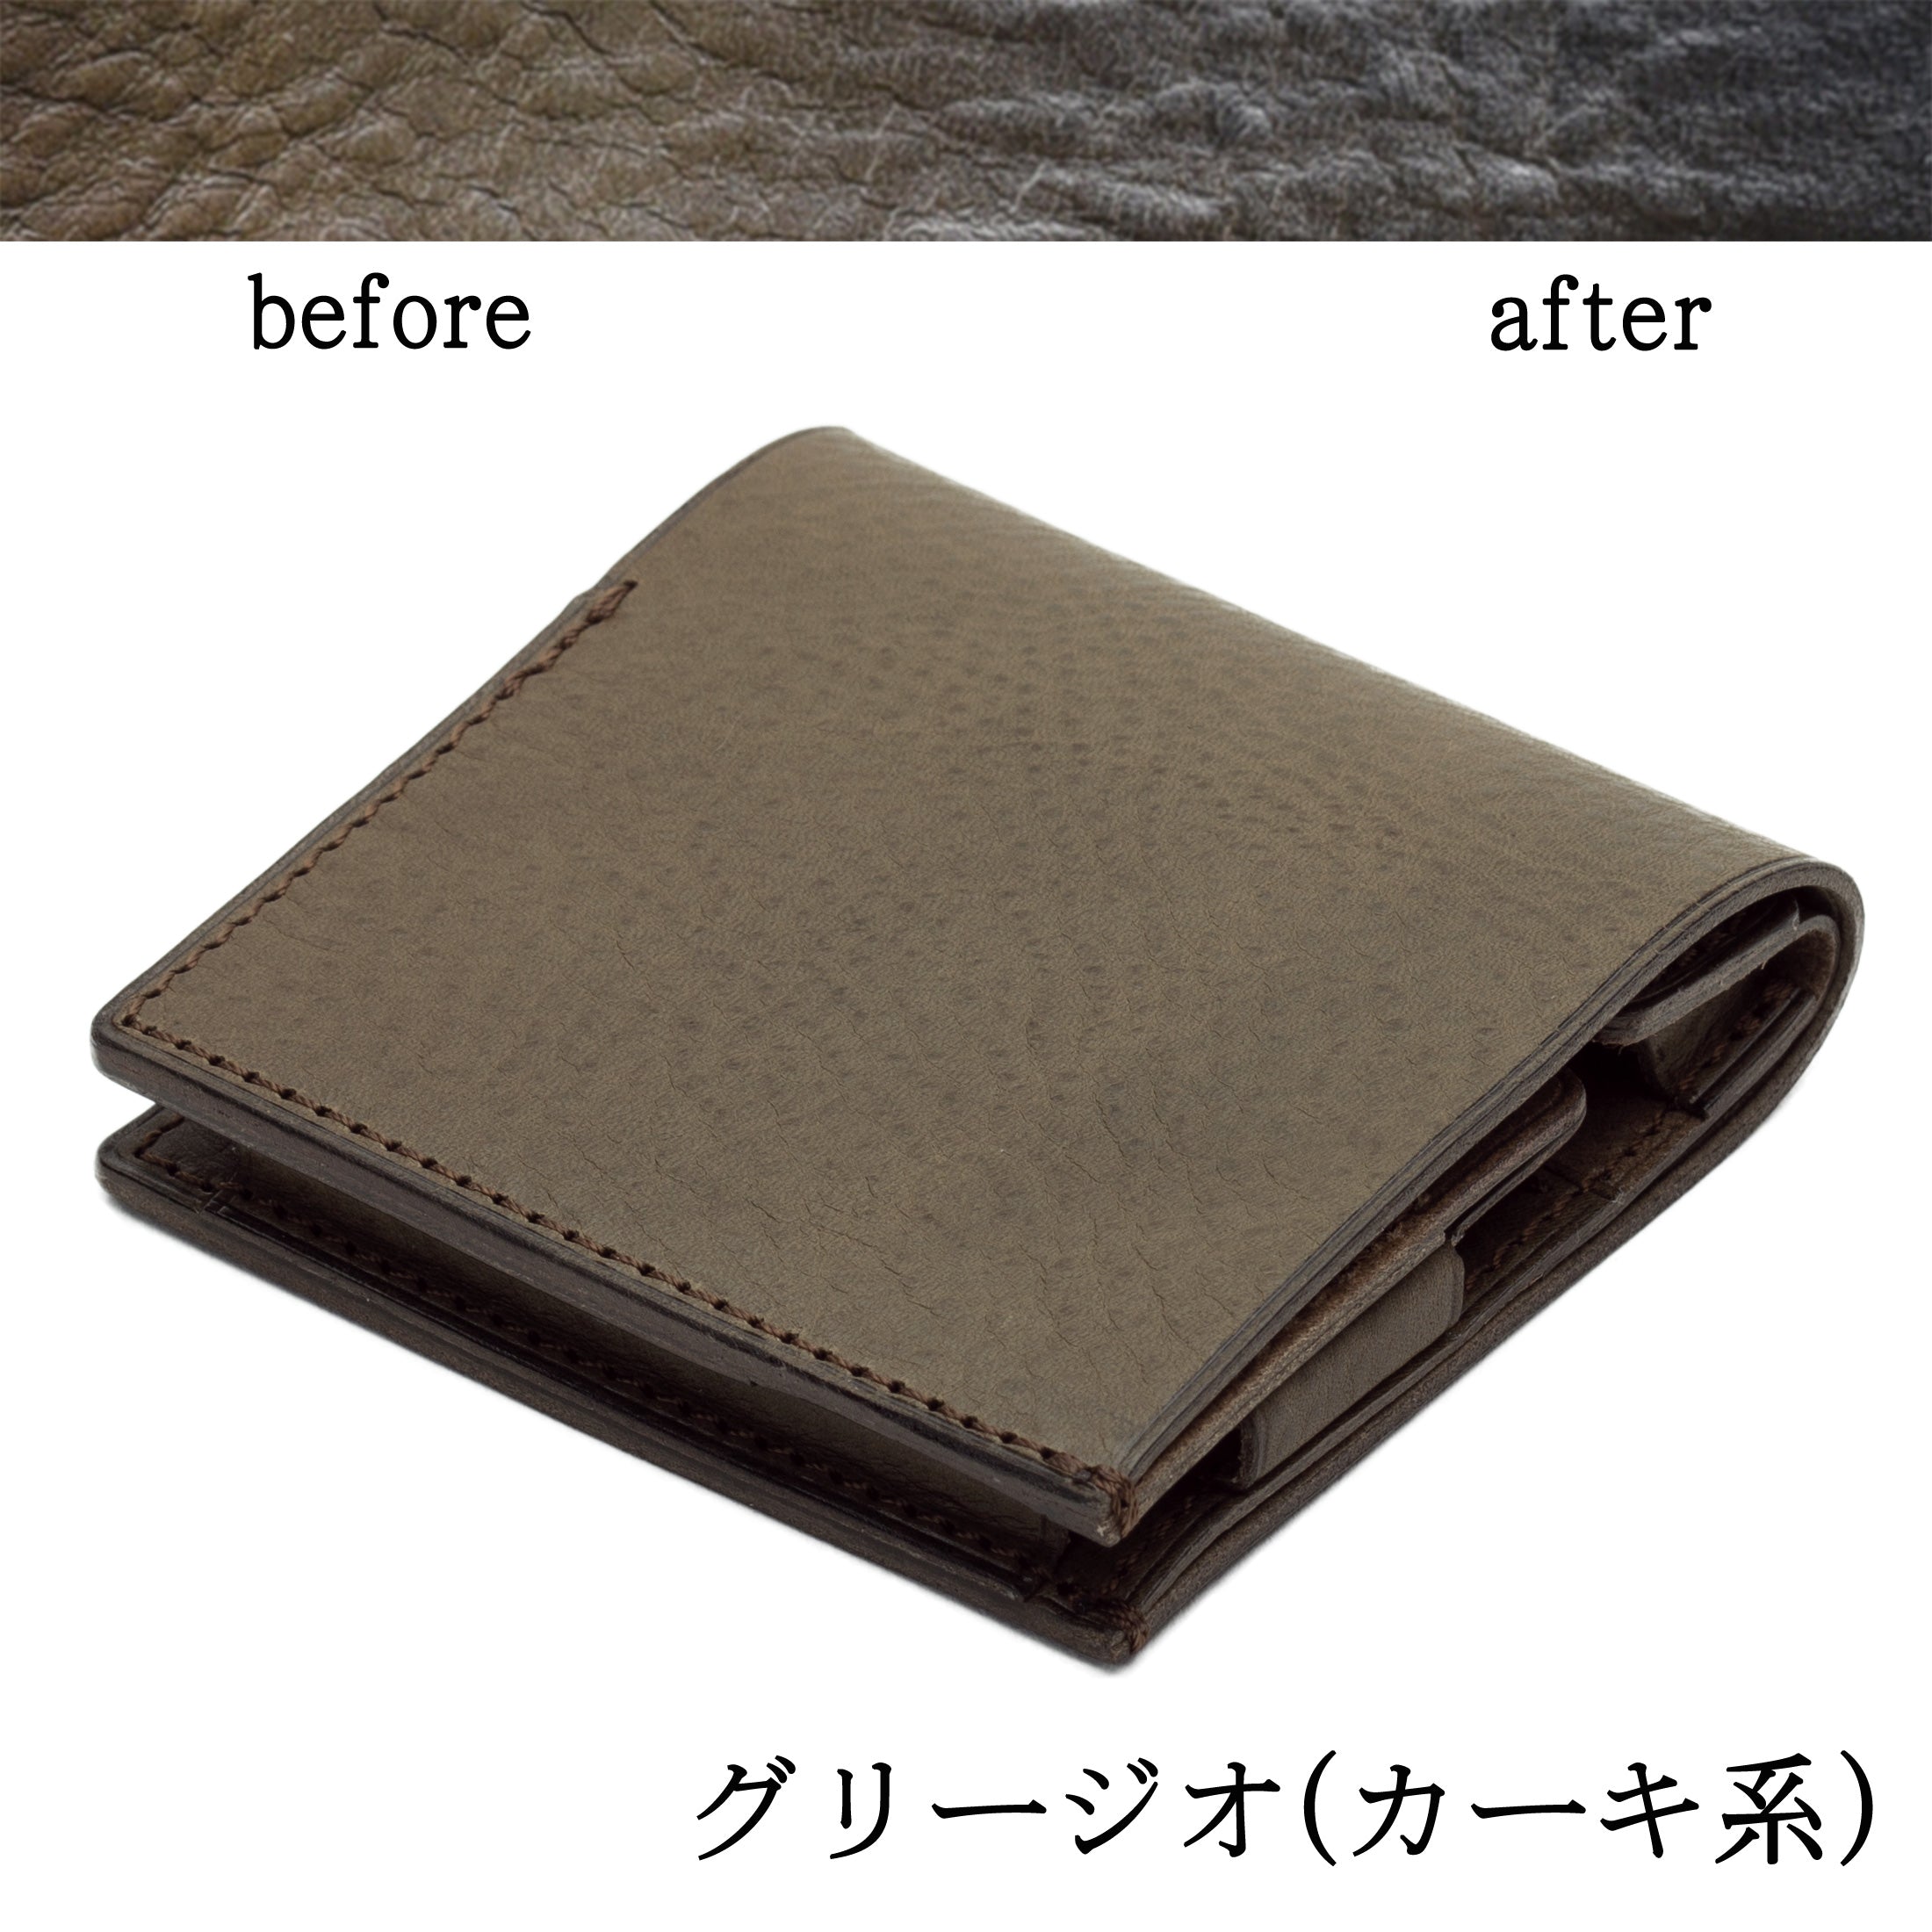 新品PLOWS もっと小さく薄い財布dritto2 ベージュ マクアケ-